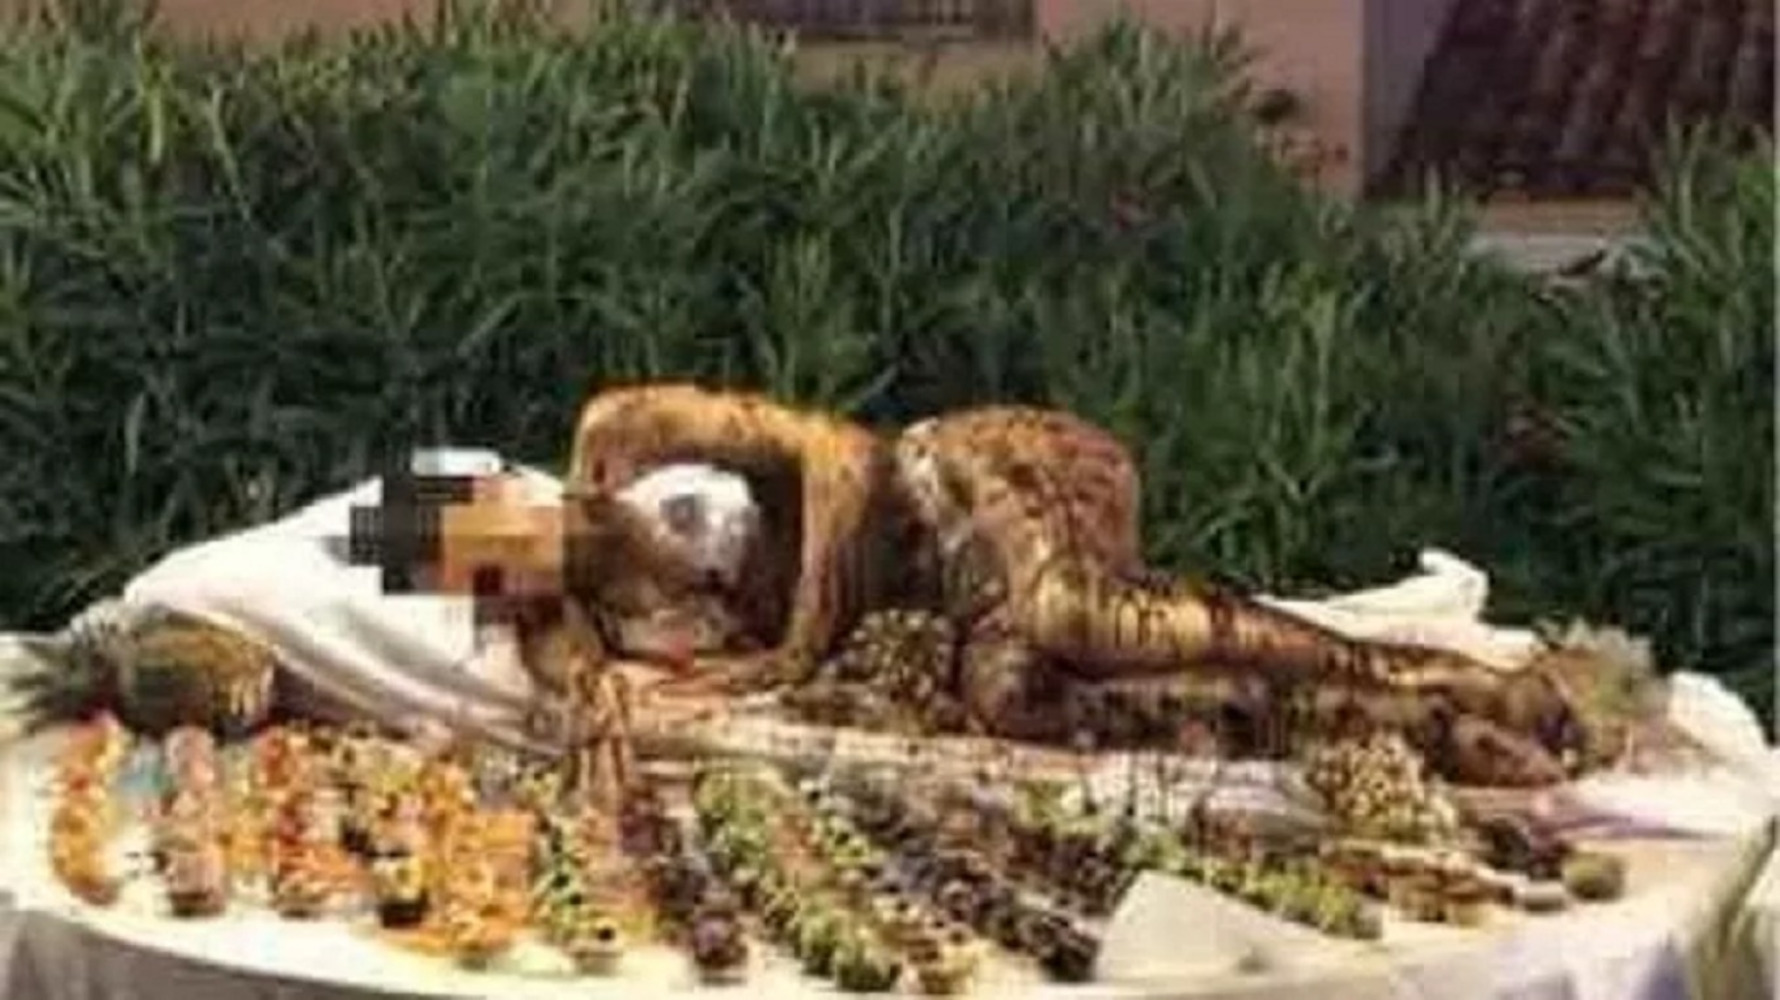 Ιταλία: Εξοργιστική εικόνα σε ξενοδοχείο – Εργαζόμενη καλυμμένη με σοκολάτα ανάμεσα στα γλυκά του μπουφέ